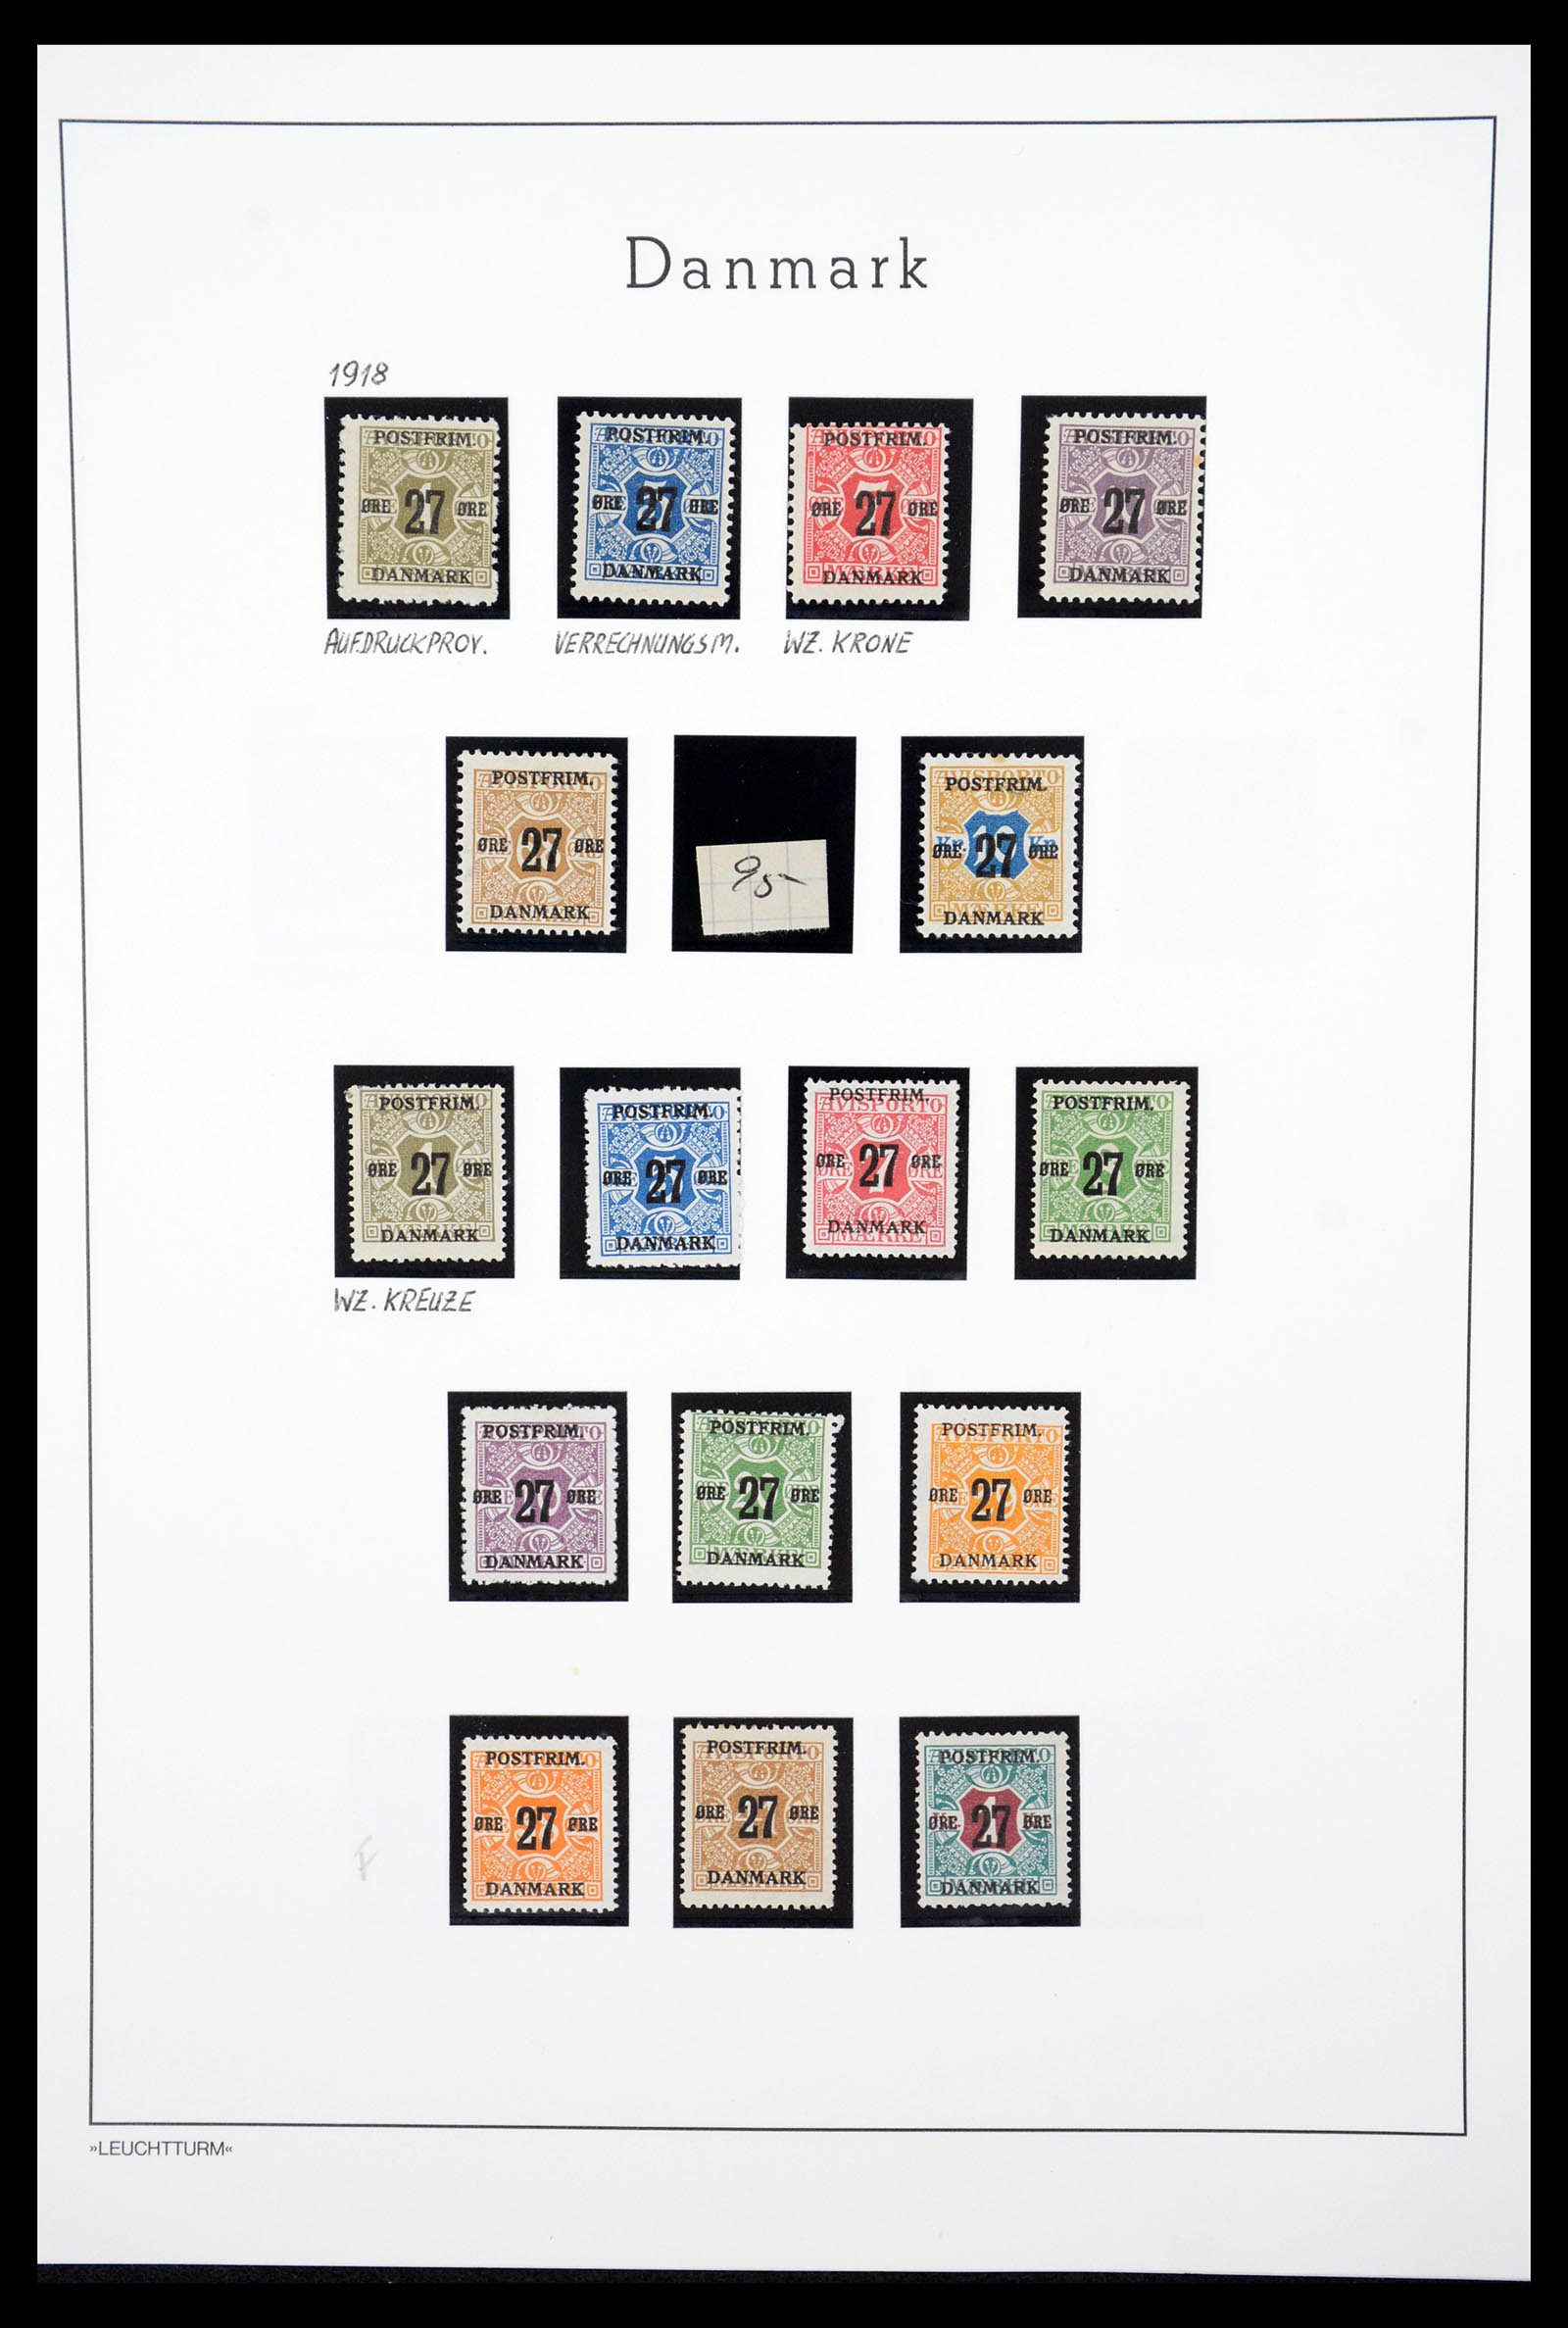 36612 036 - Stamp collection 36612 Denemarken 1851-1990.